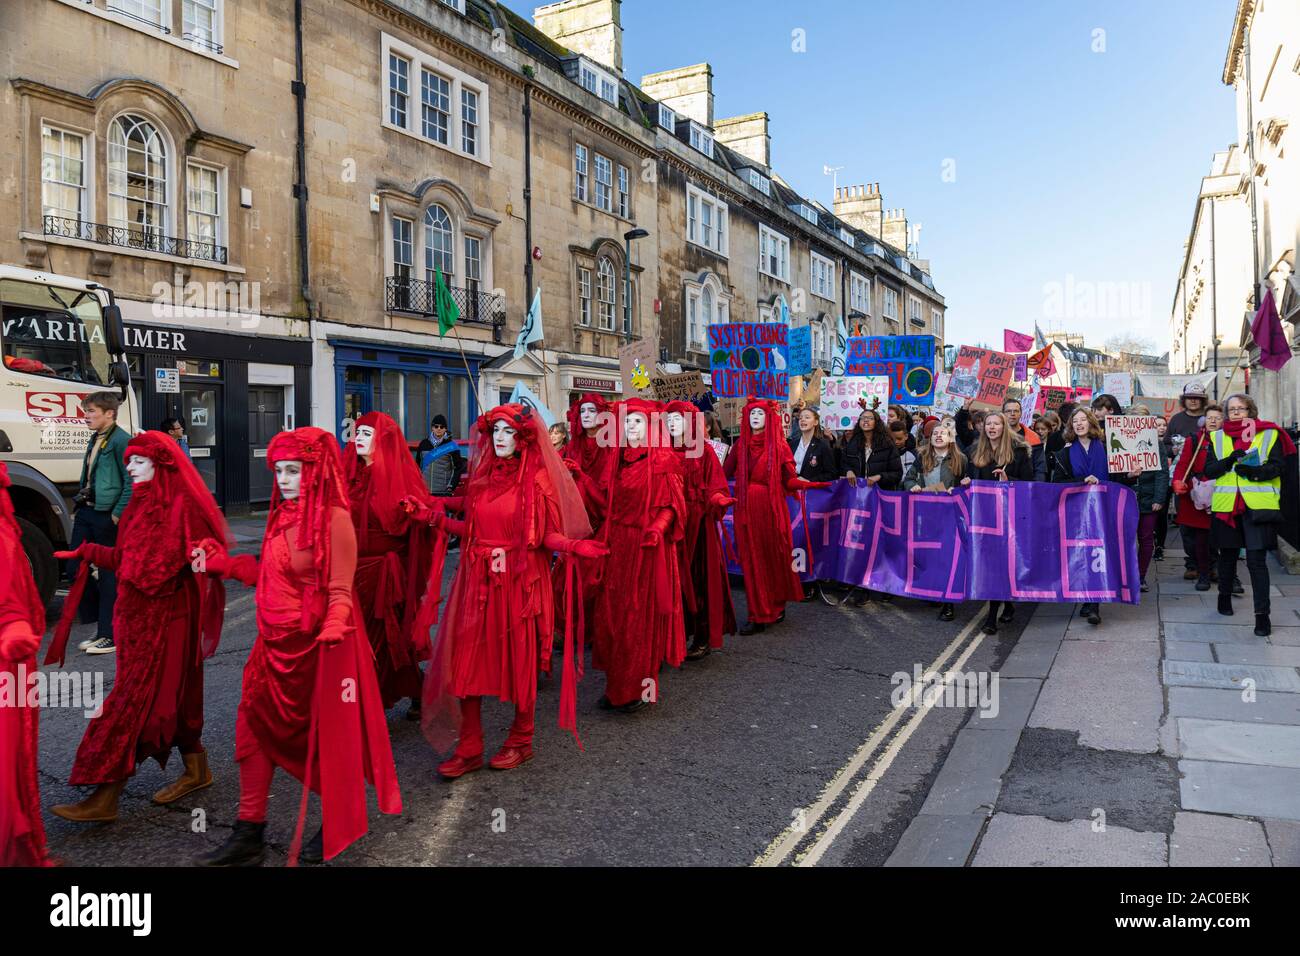 Extinction les manifestants de la Brigade rouge de Rébellion sur le changement climatique se rassemblent dans le centre de Bath avec la Youth Climate Alliance qui milite pour l'action du changement climatique. Bath Royaume-Uni. 29 novembre 2019, Angleterre, Royaume-Uni Banque D'Images